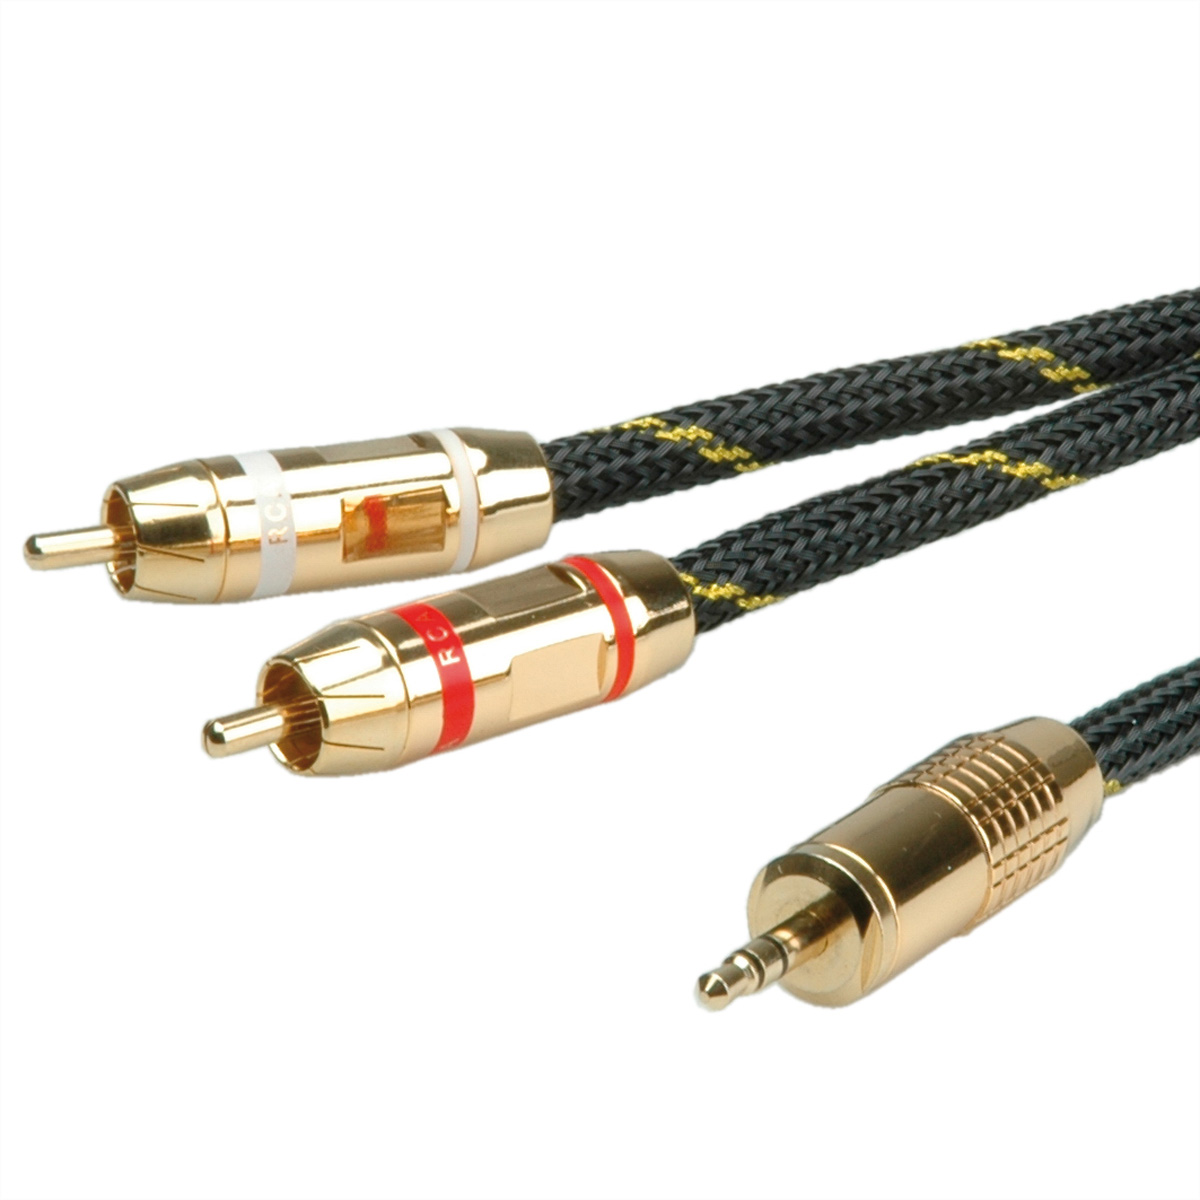 ROLINE GOLD Audio-Verbindungskabel 3,5mm Stereo Cinch, 2x 3,5mm-zu-Cinch - m Kabel, 5 ST/ST